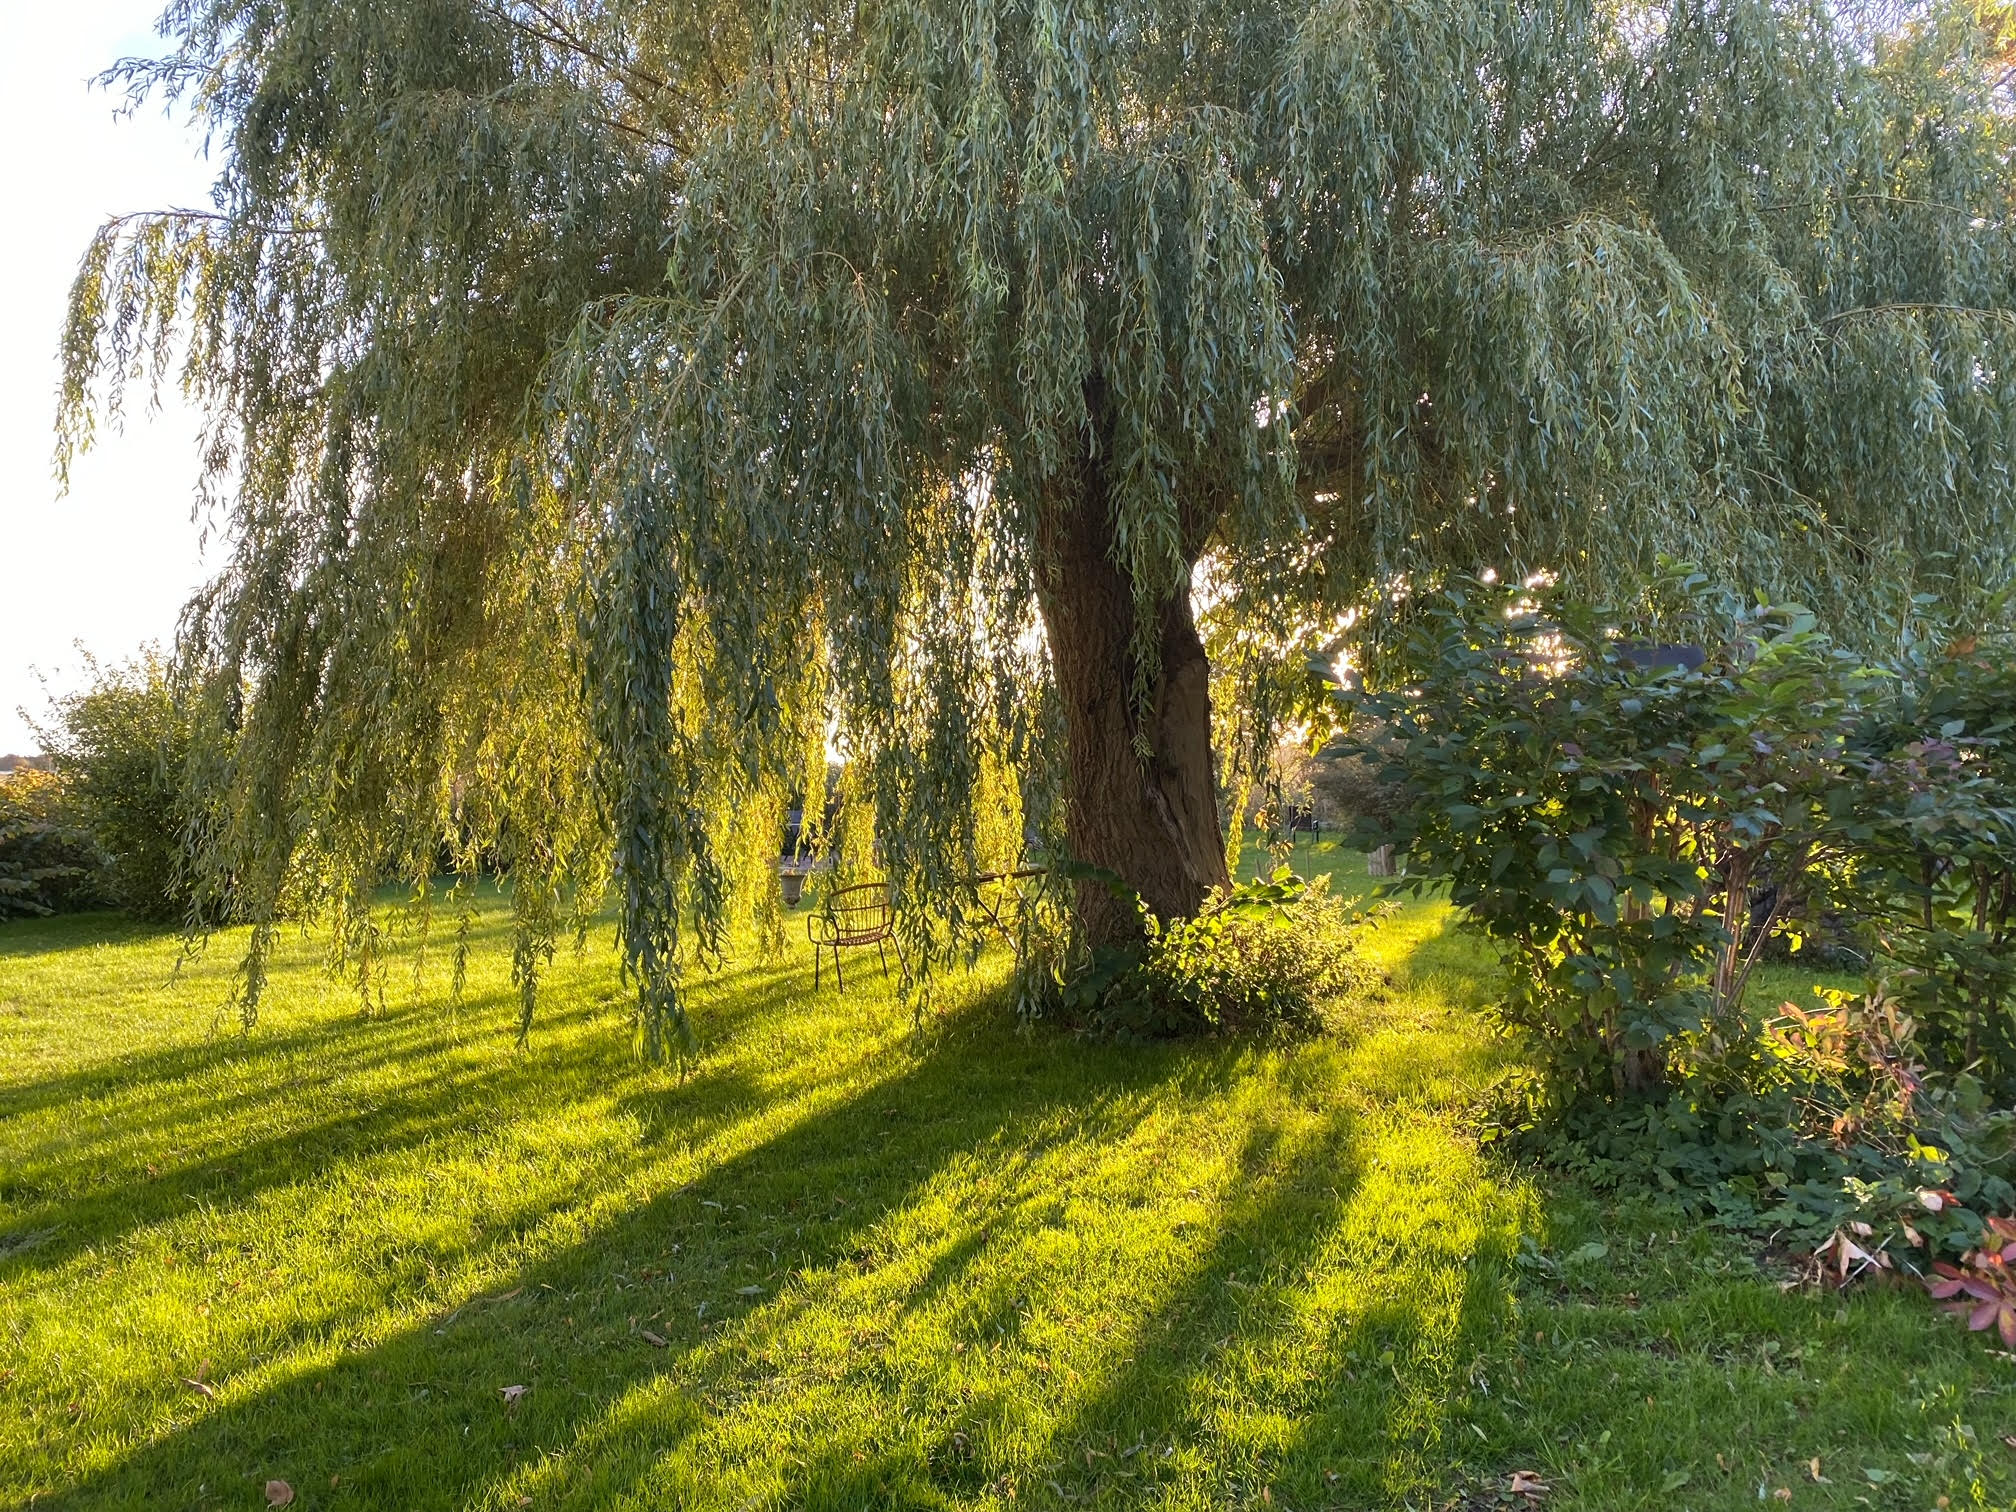 Anna's willow tree in her garden